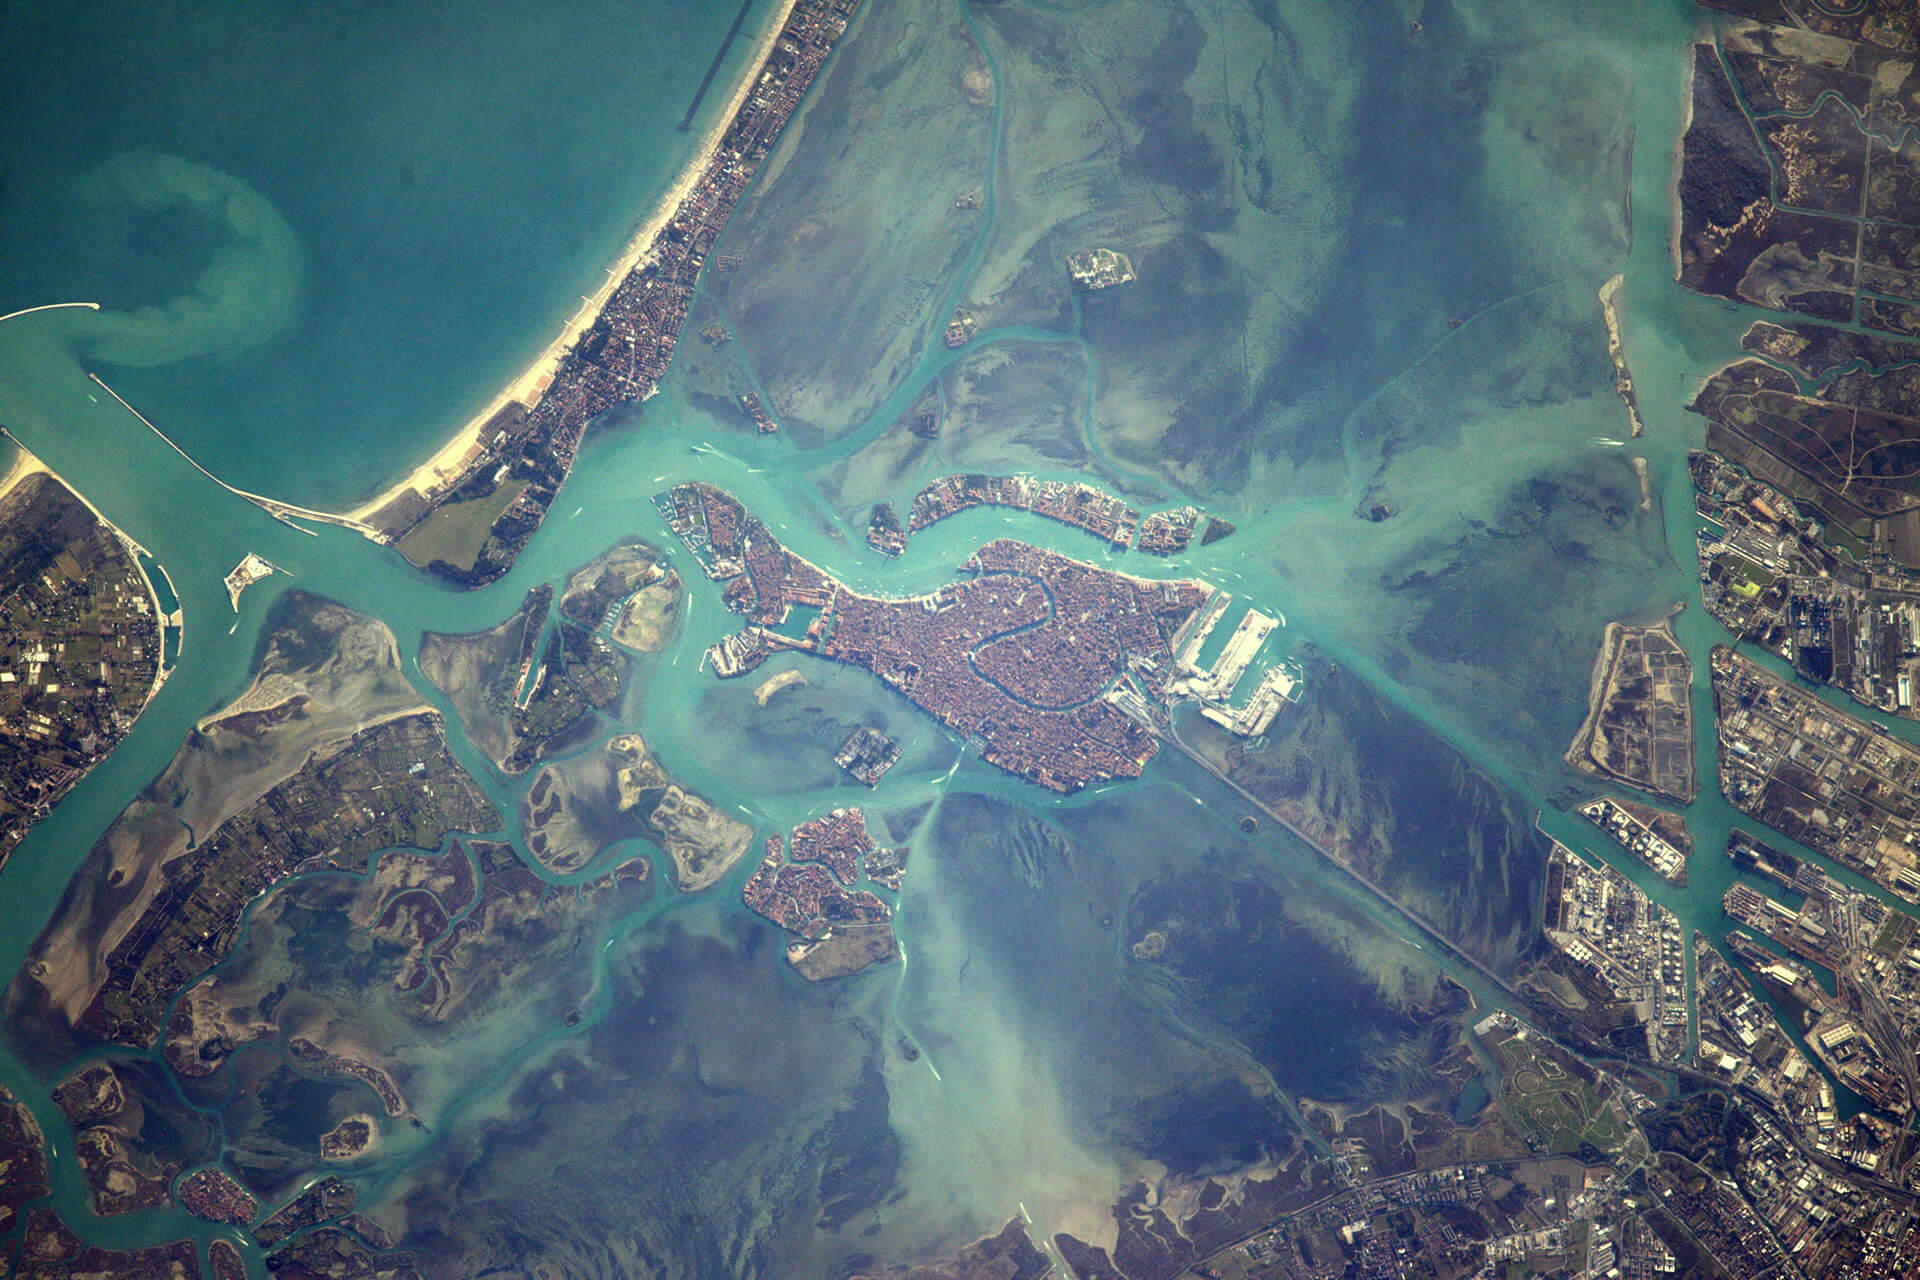 Venise vue de la Station spatiale internationale